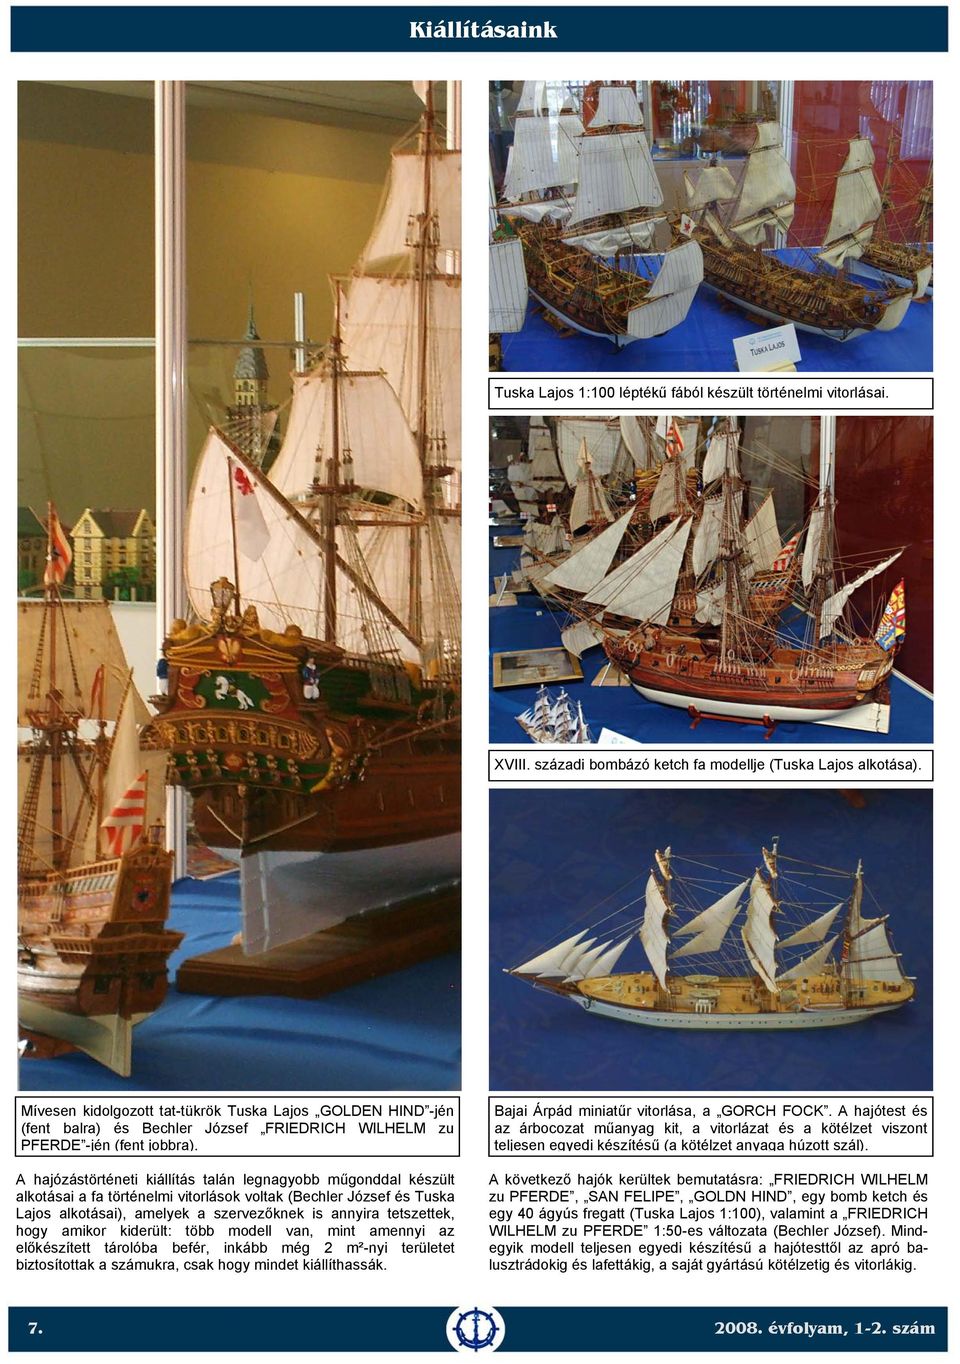 A hajózástörténeti kiállítás talán legnagyobb műgonddal készült alkotásai a fa történelmi vitorlások voltak (Bechler József és Tuska Lajos alkotásai), amelyek a szervezőknek is annyira tetszettek,